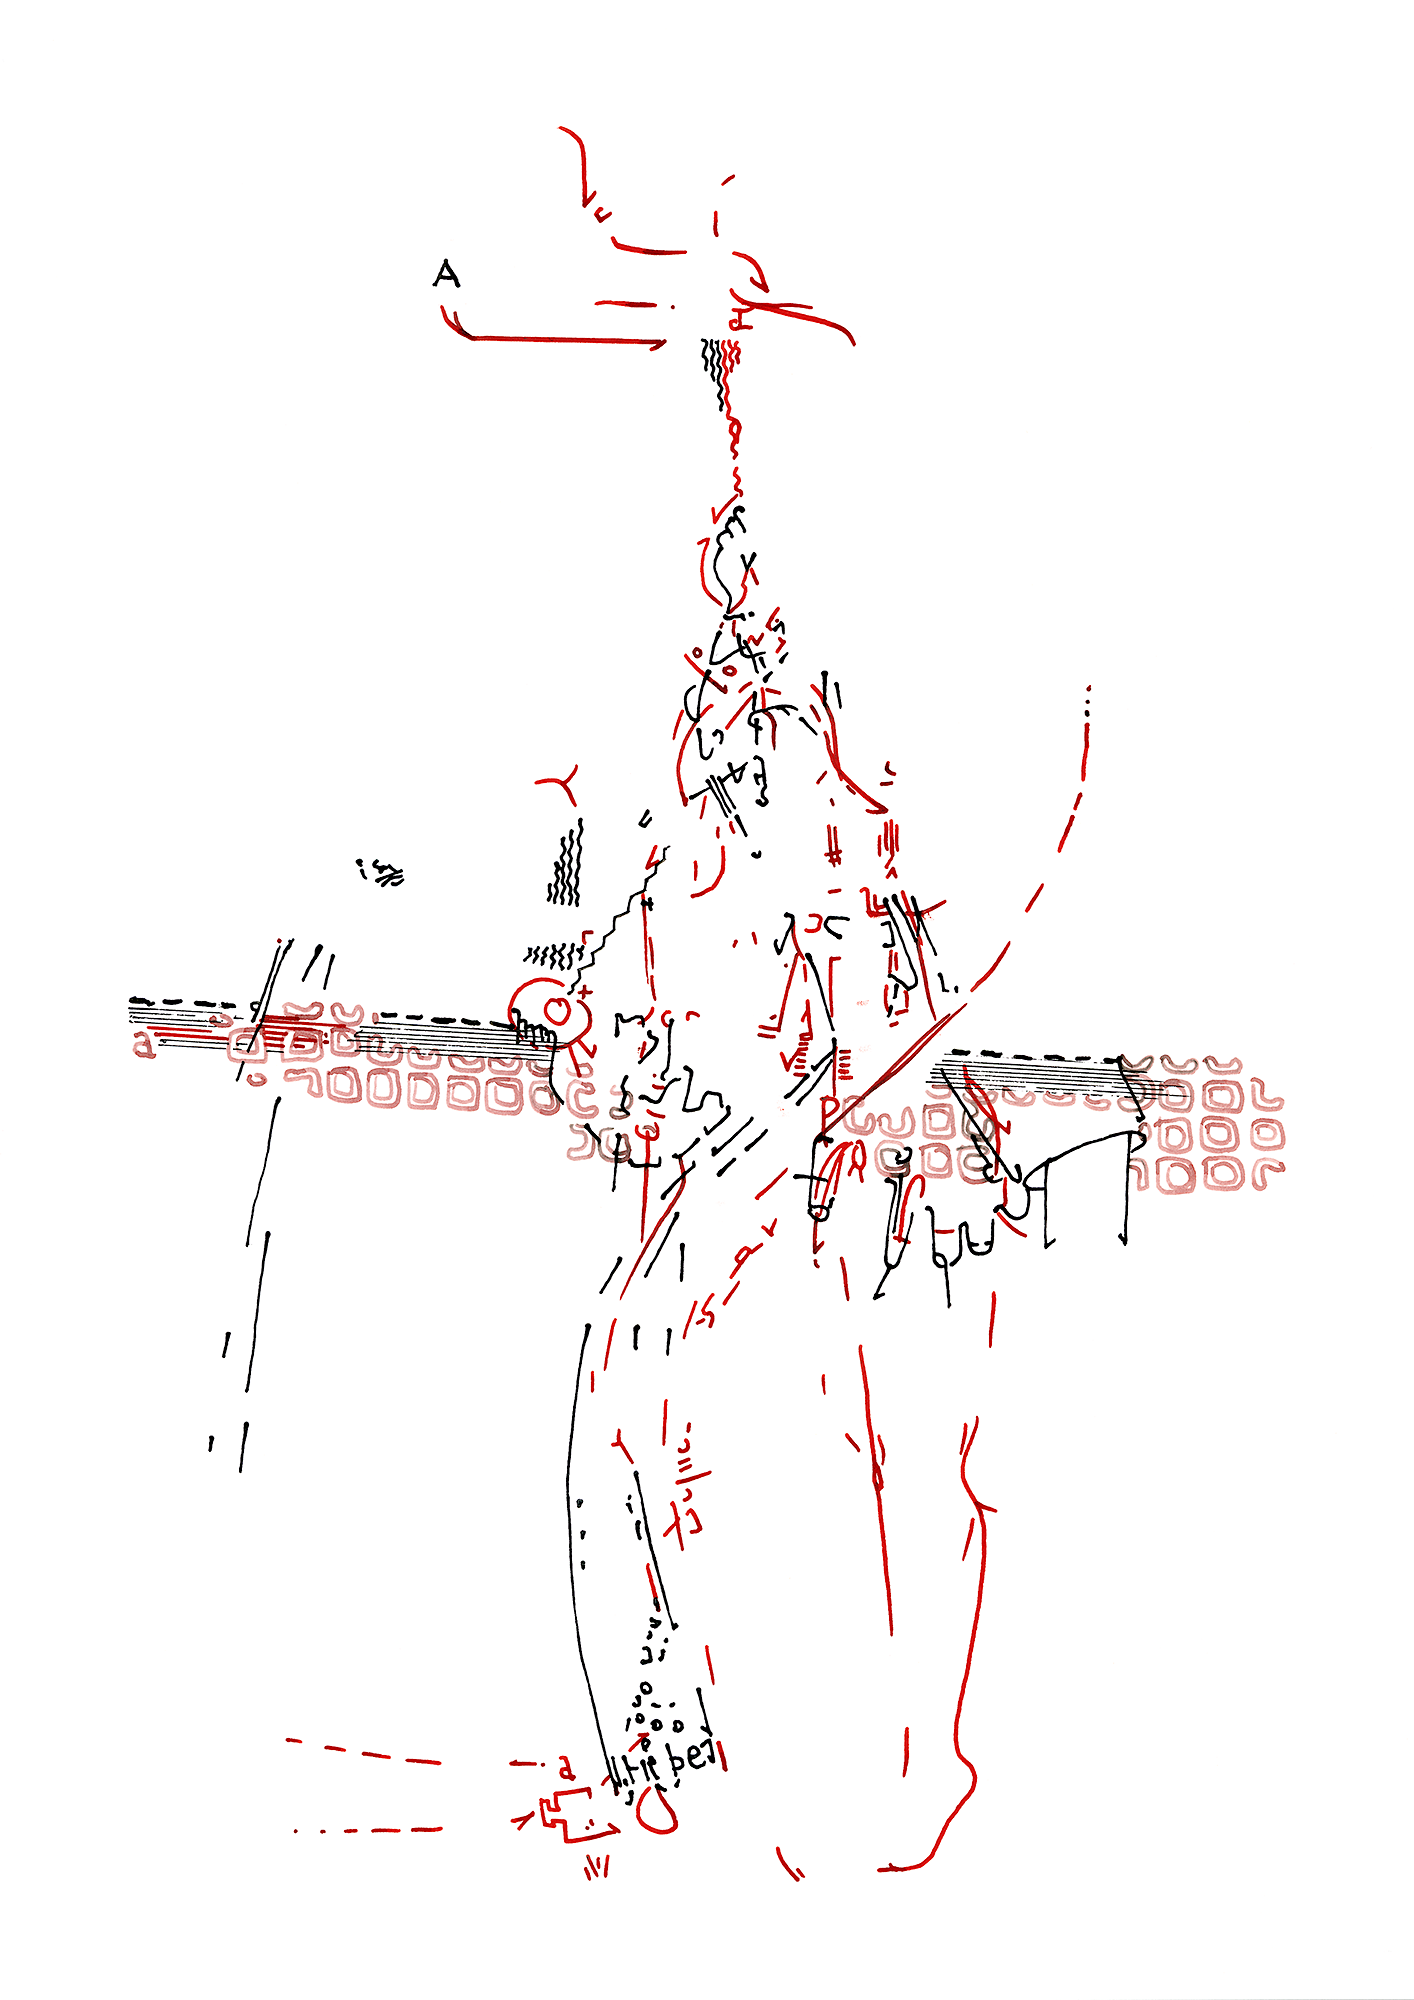 Hannes Kater: Tageszeichnung (Zeichnung/drawing) vom 03.11.2015 (1414 x 2000 Pixel)